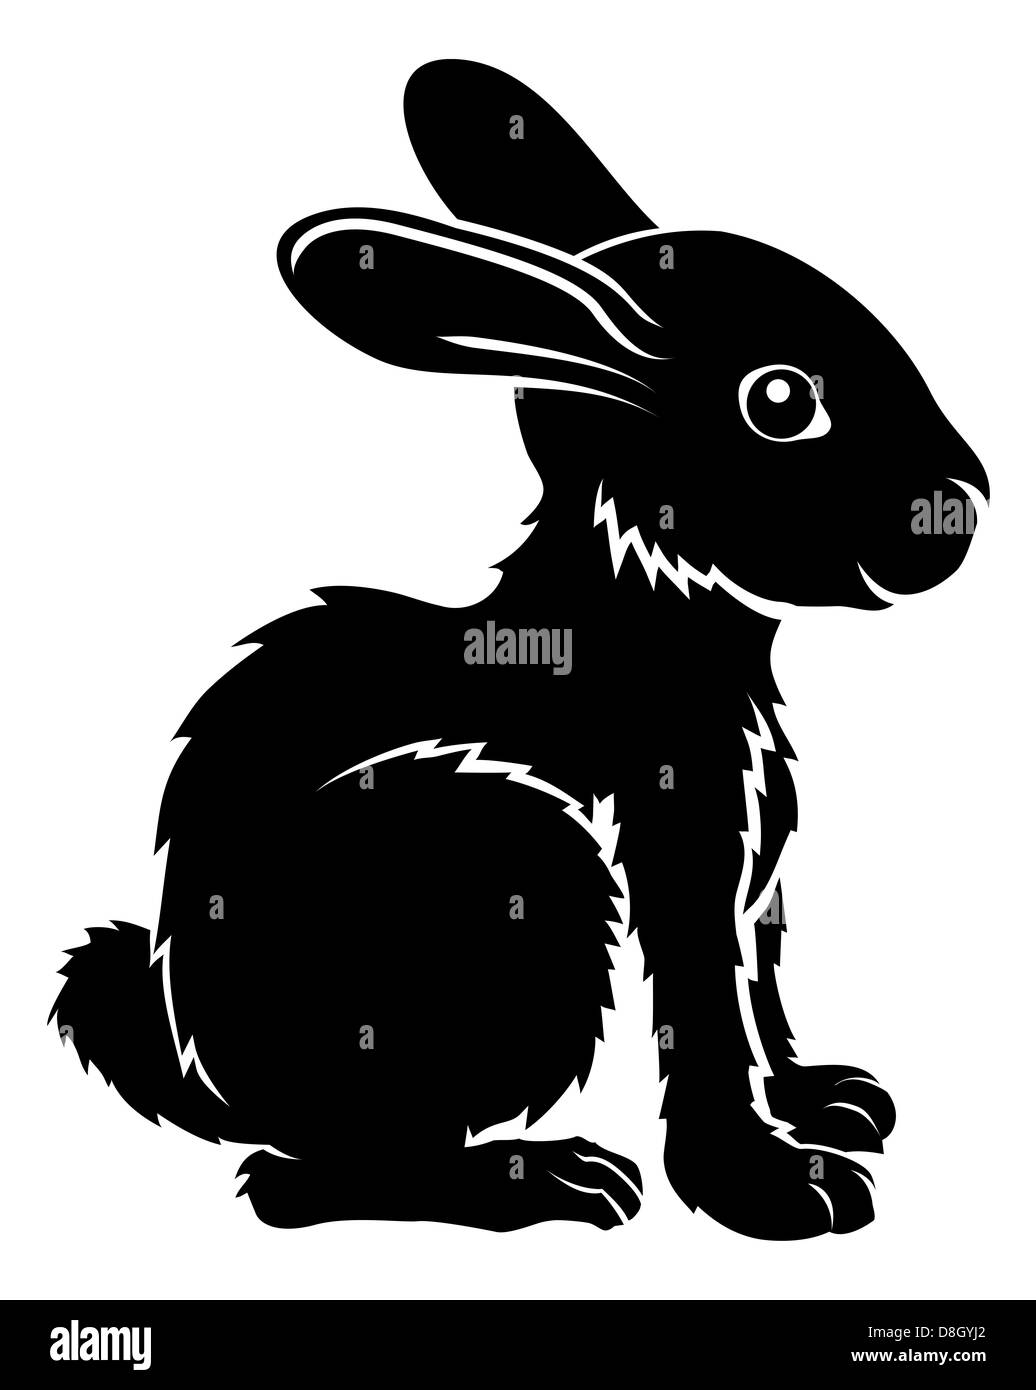 Une illustration d'un lapin stylisé peut-être un tatouage de lapin Banque D'Images